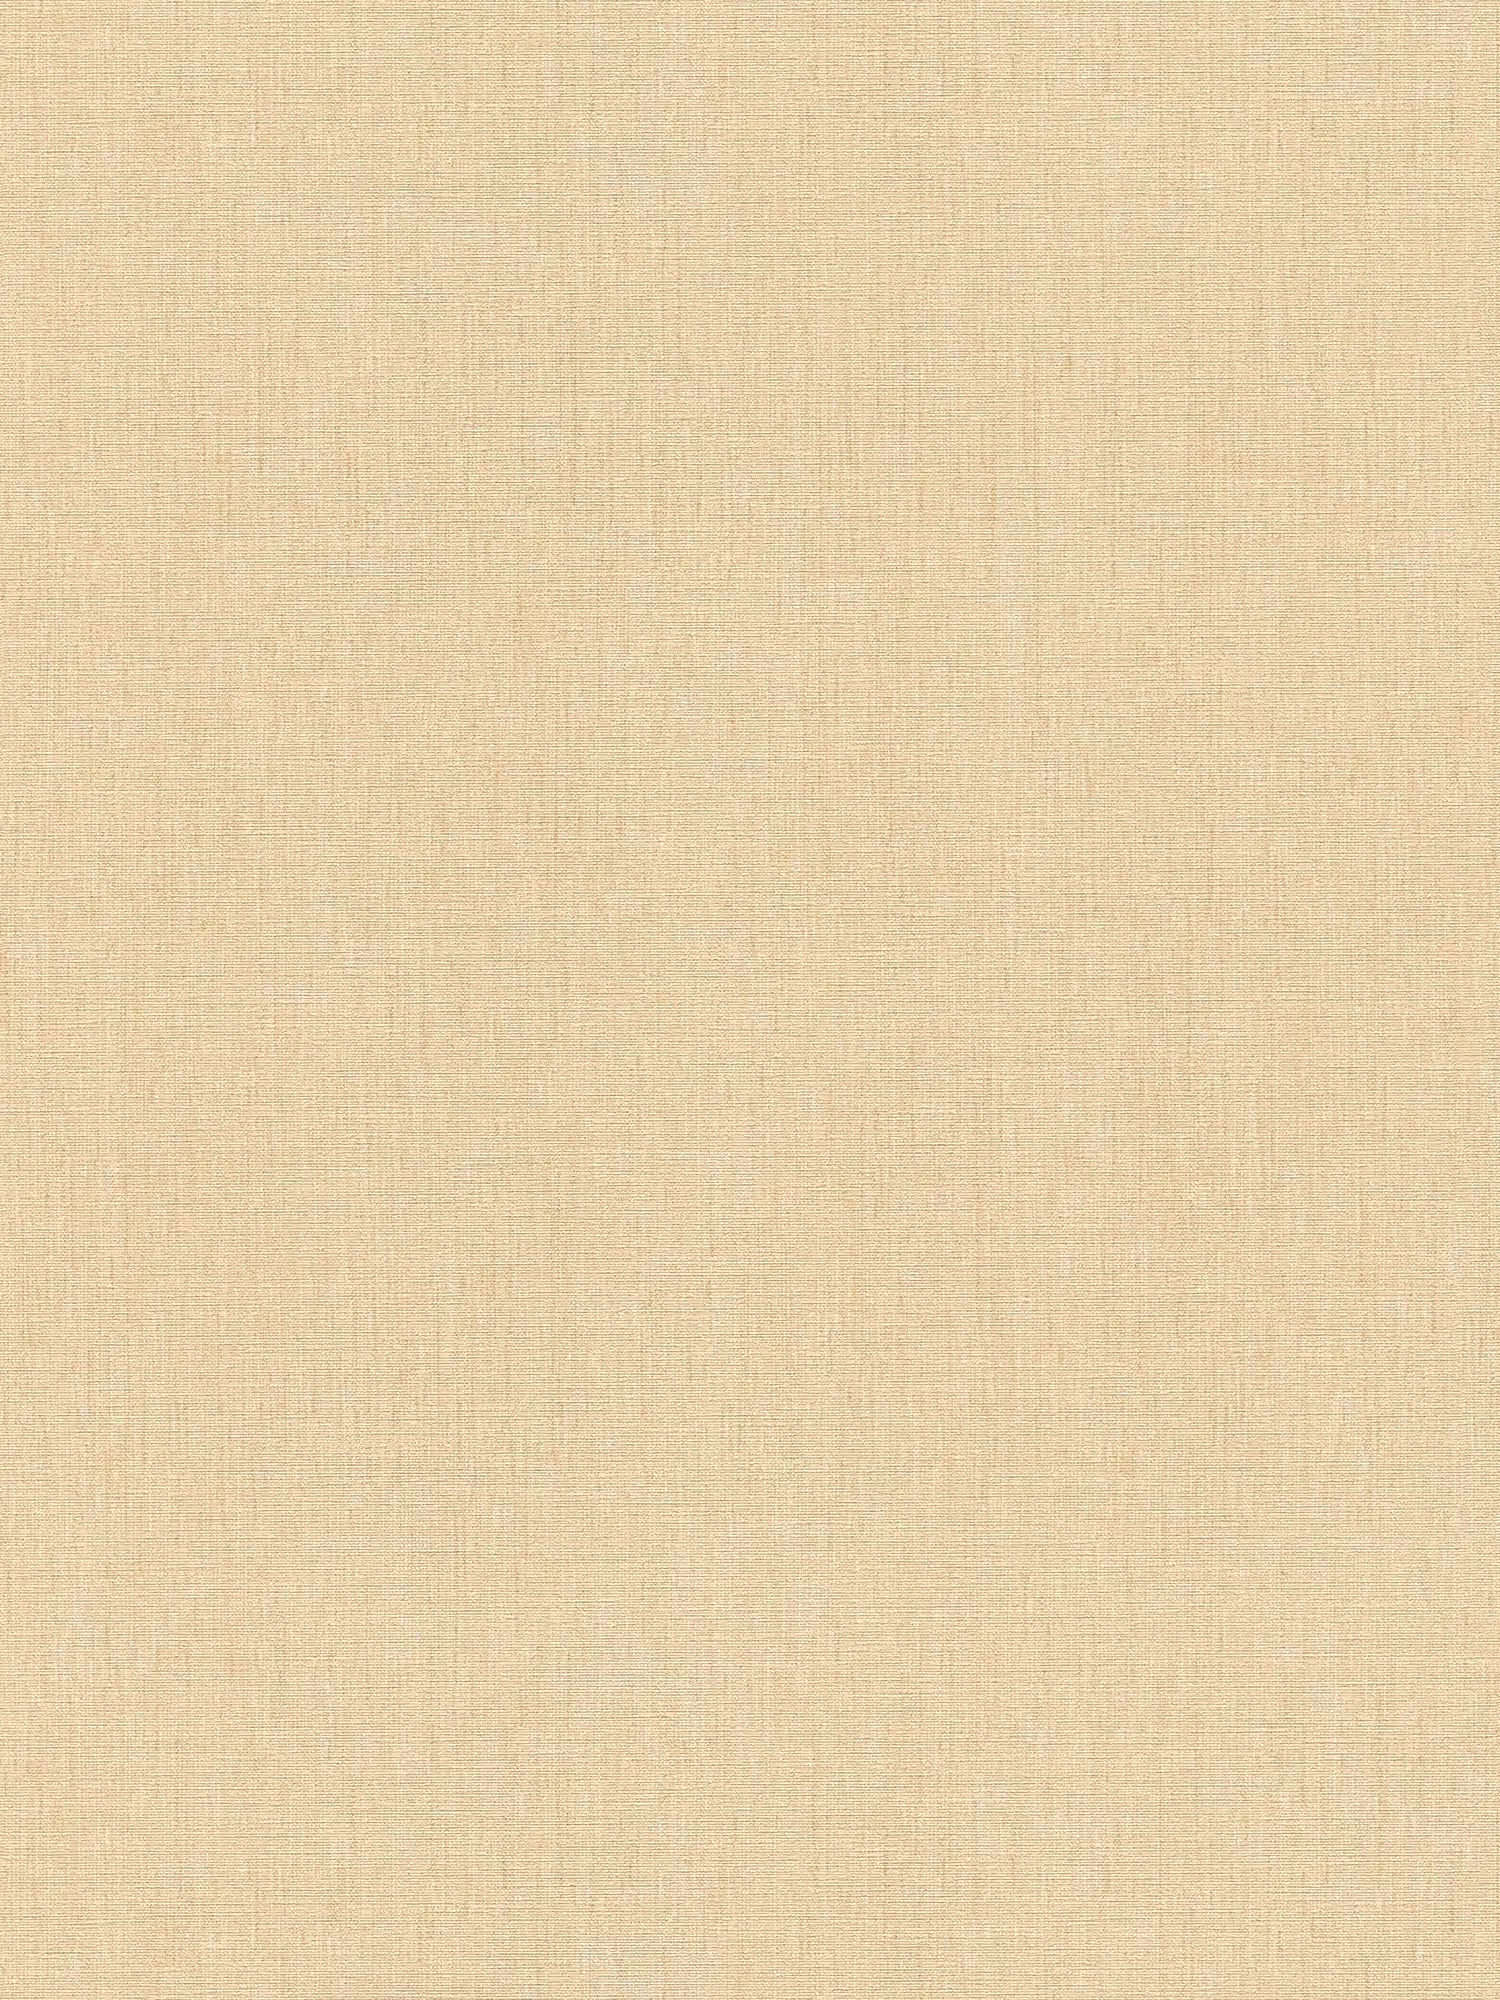 Carta da parati non tessuta con un aspetto tessile leggero in una tonalità semplice - Beige
